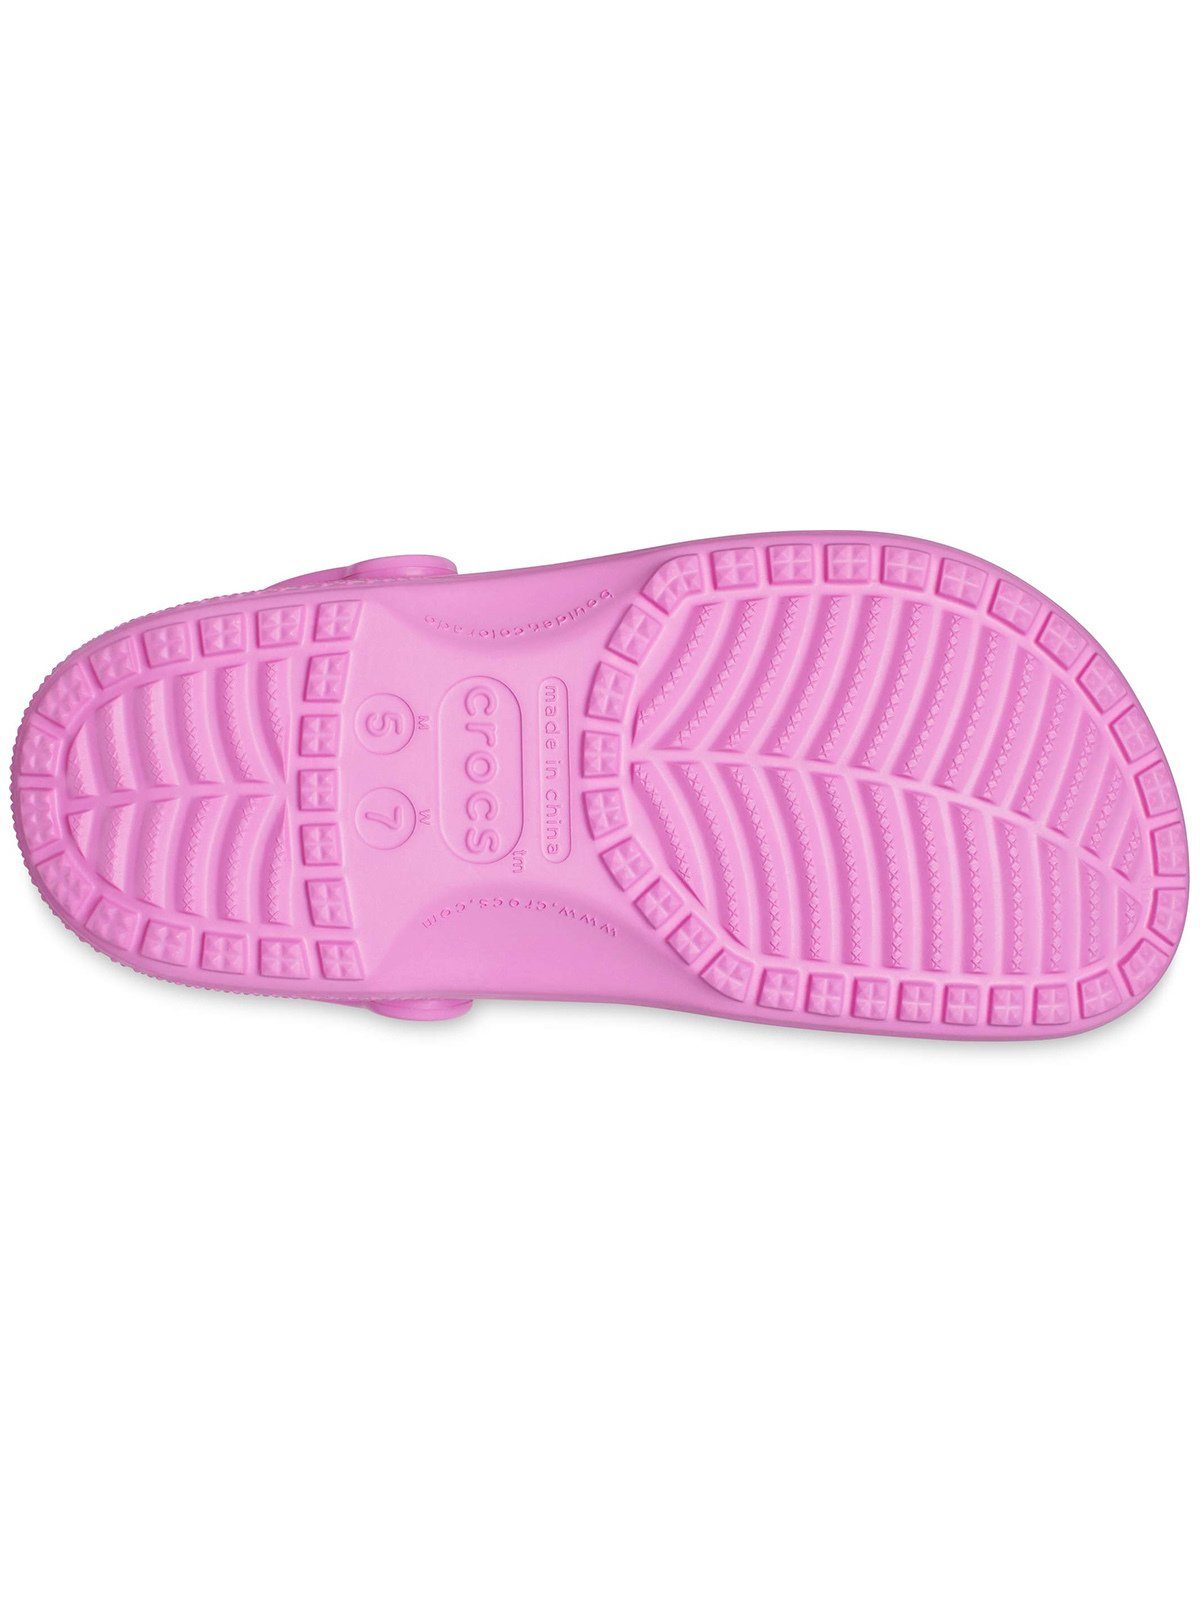 Crocs Crocs taffy Clog Clog Classic pink